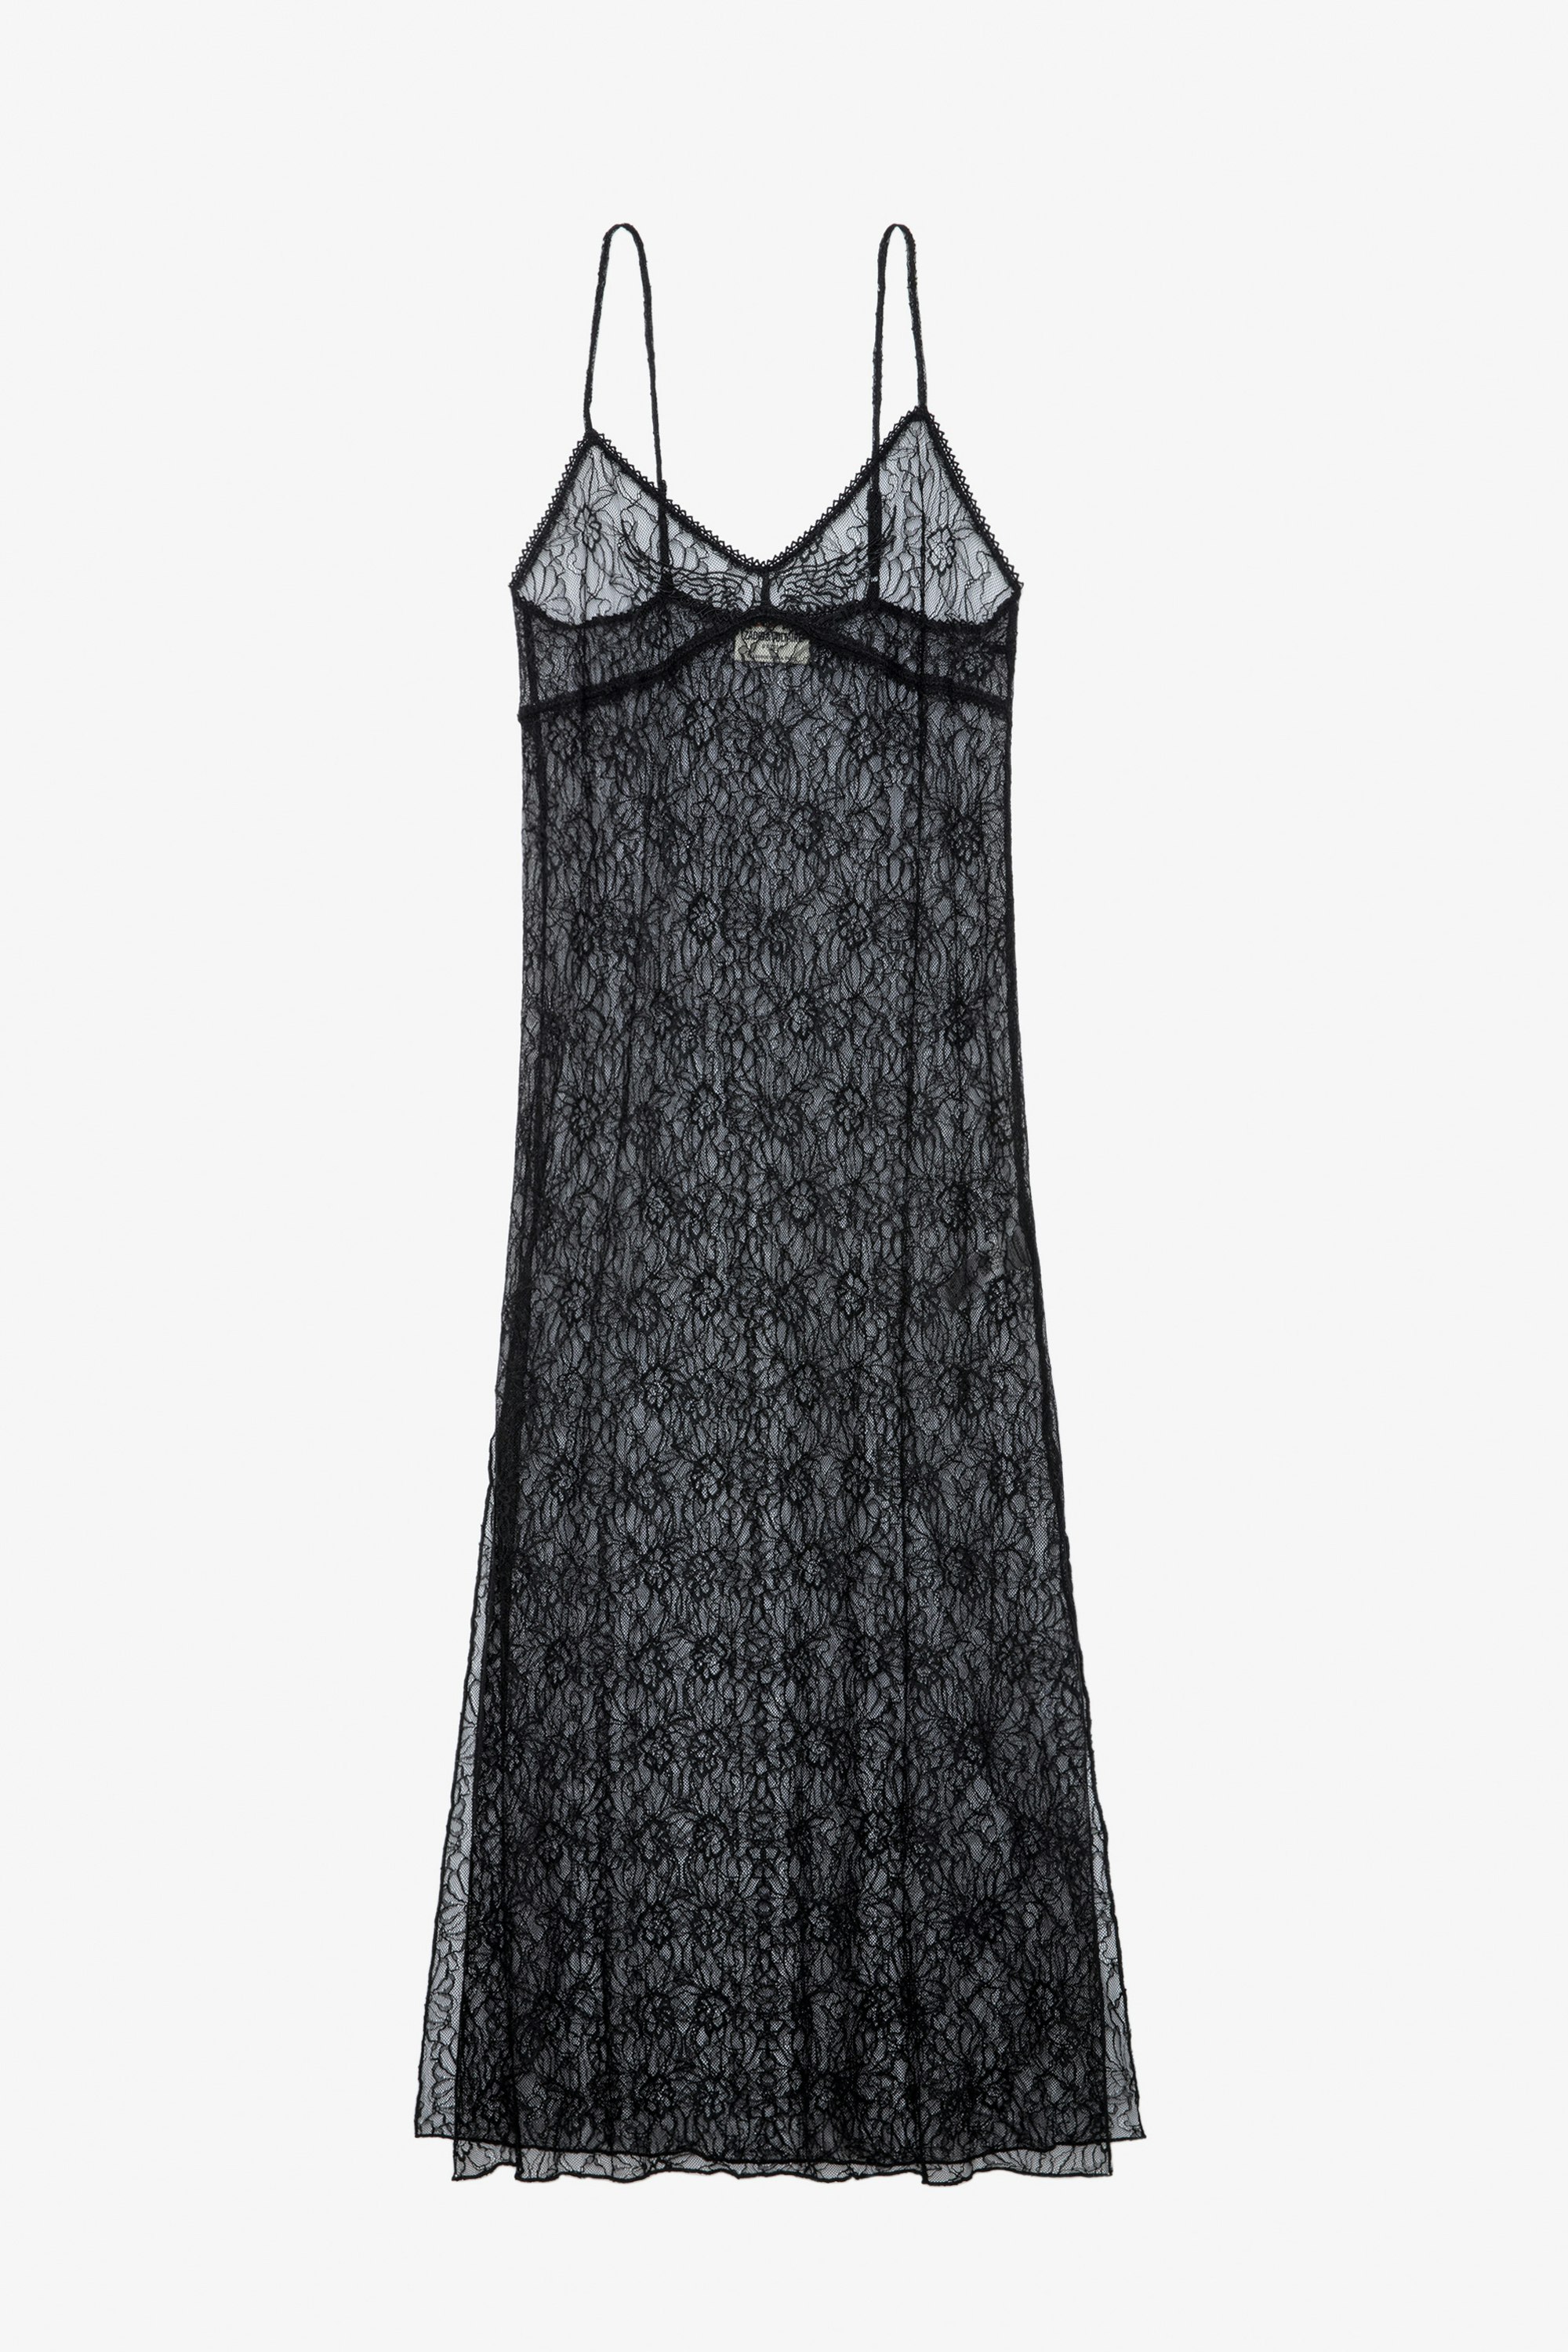 Kleid Ryzig - Langes, transparentes Kleid im Lingerie-Stil in Schwarz mit schmalen Trägern, geblümter Spitze und Flügeln.